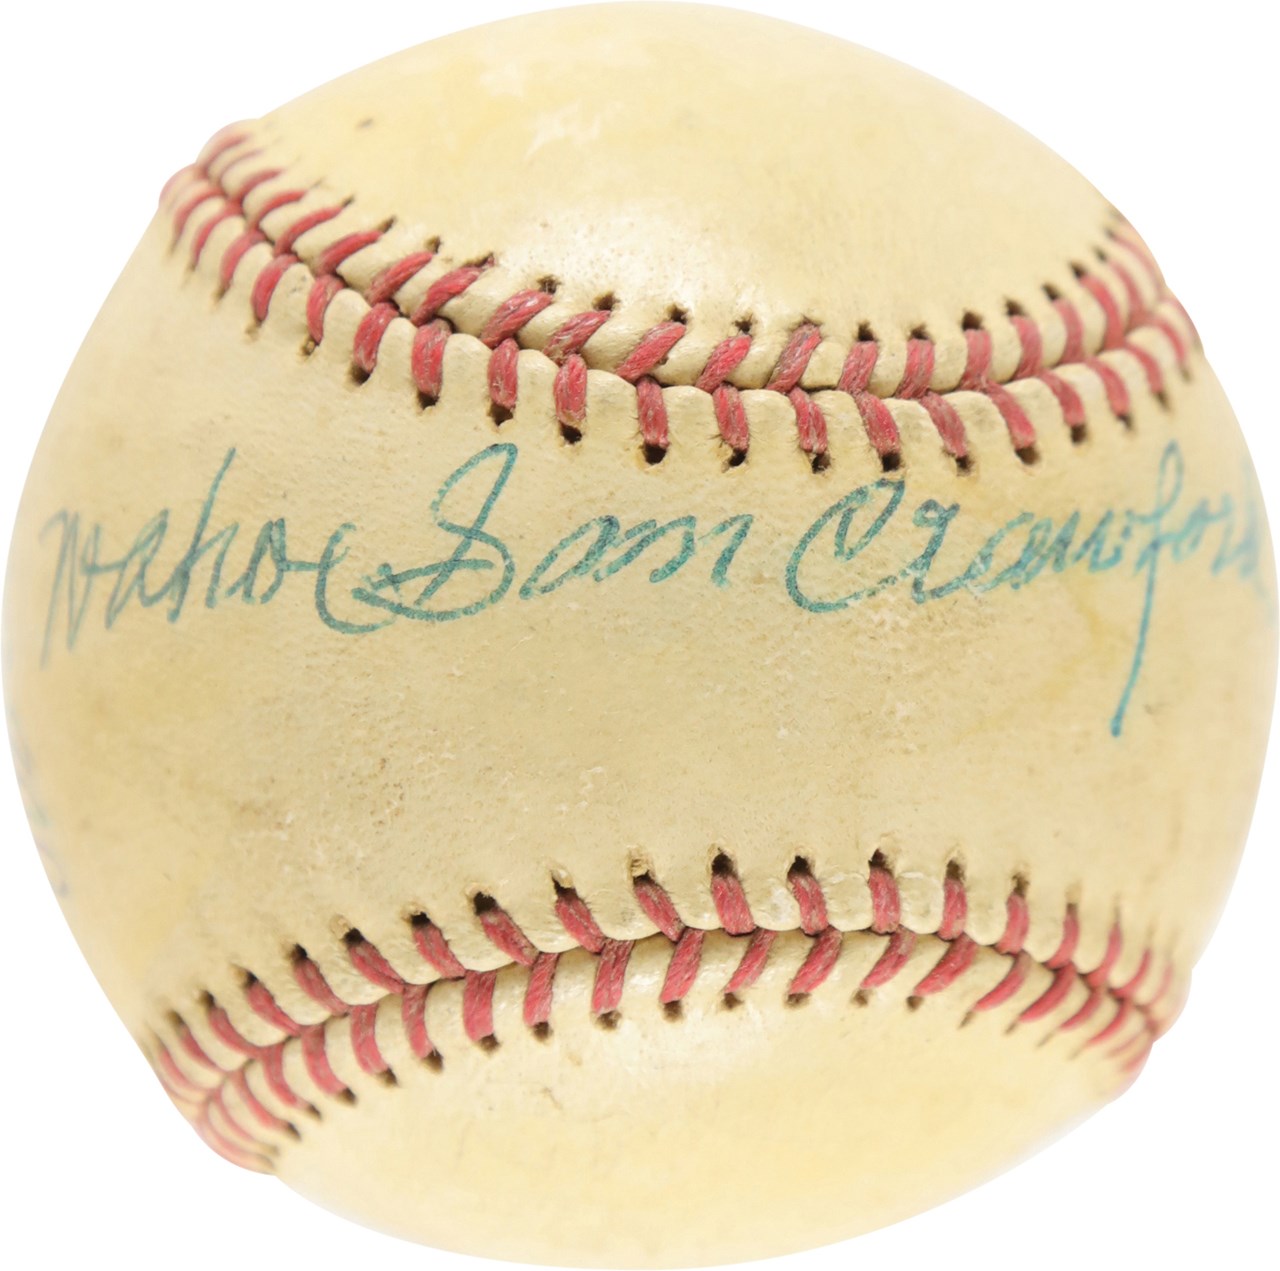 Baseball Autographs - Wahoo Sam Crawford Single Signed Baseball with Provenance